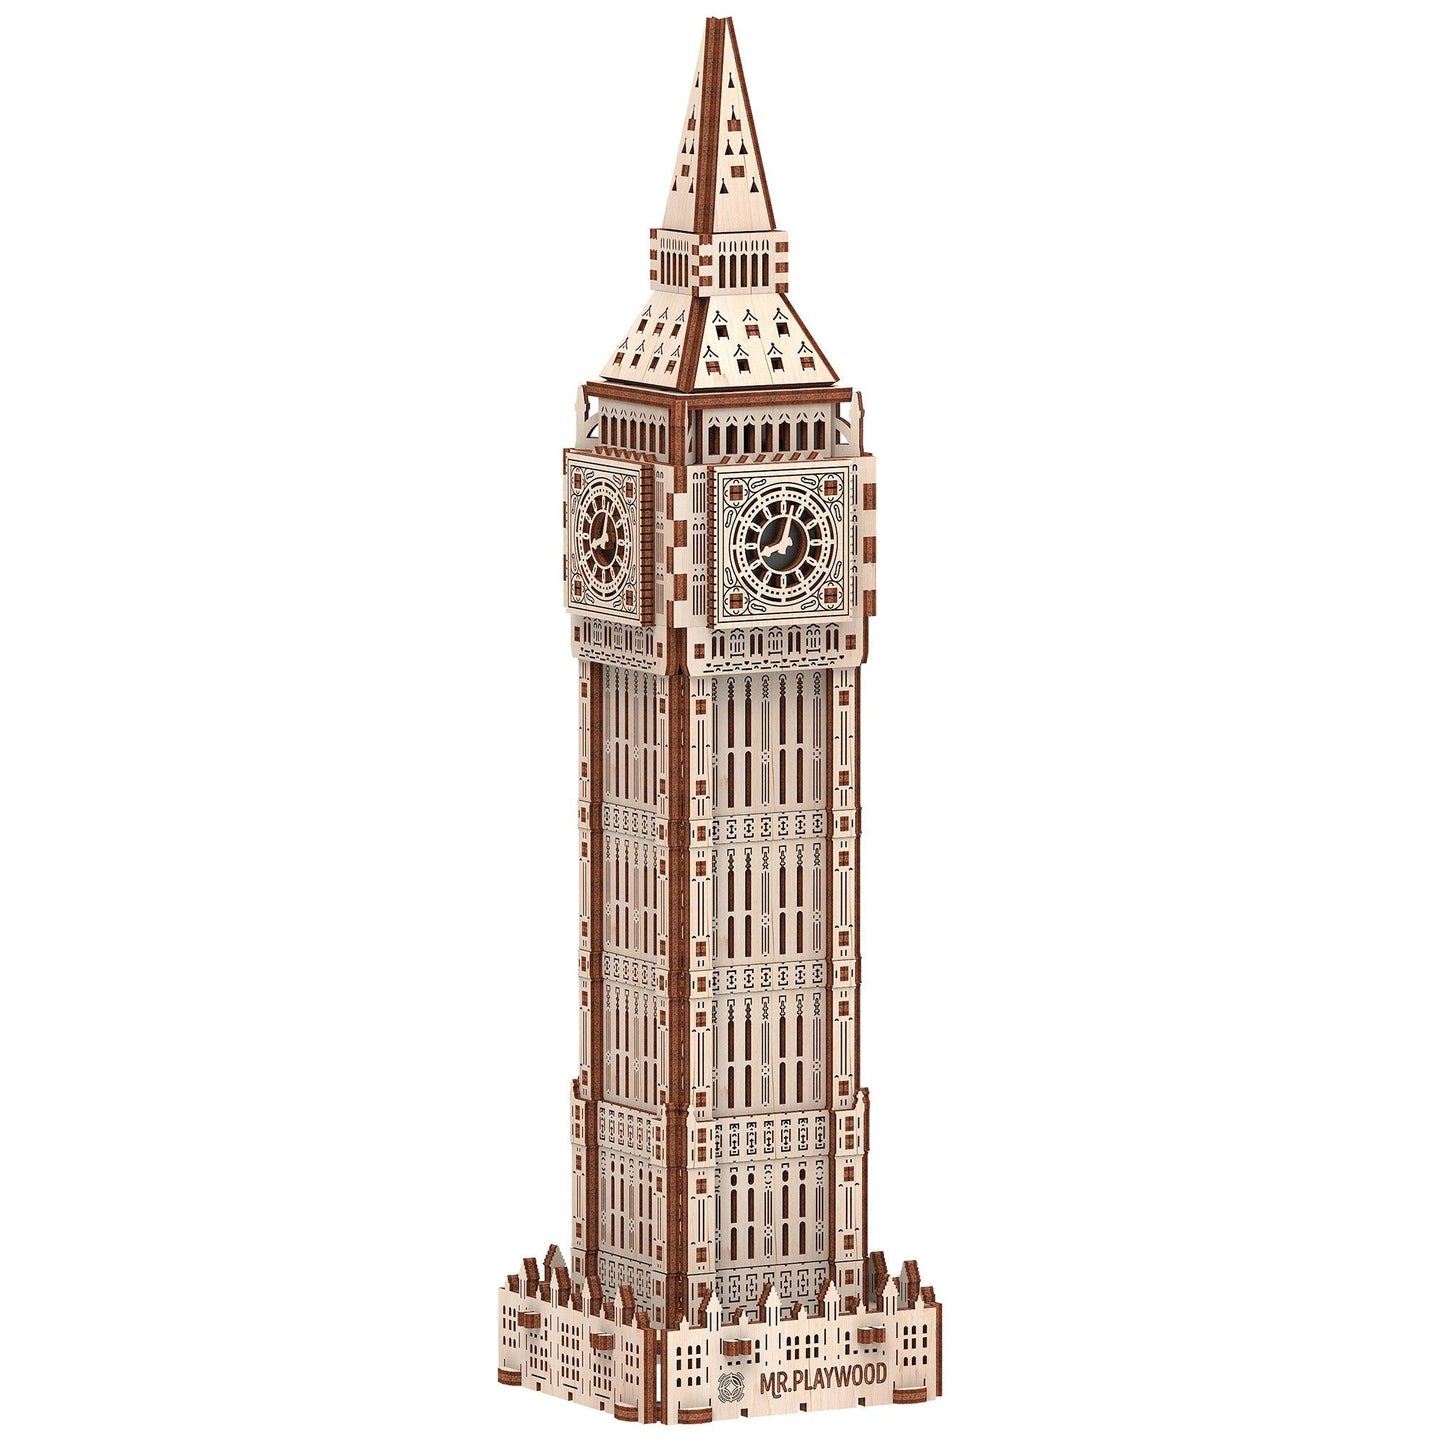 Big Ben 3D Puzzle - Loomini